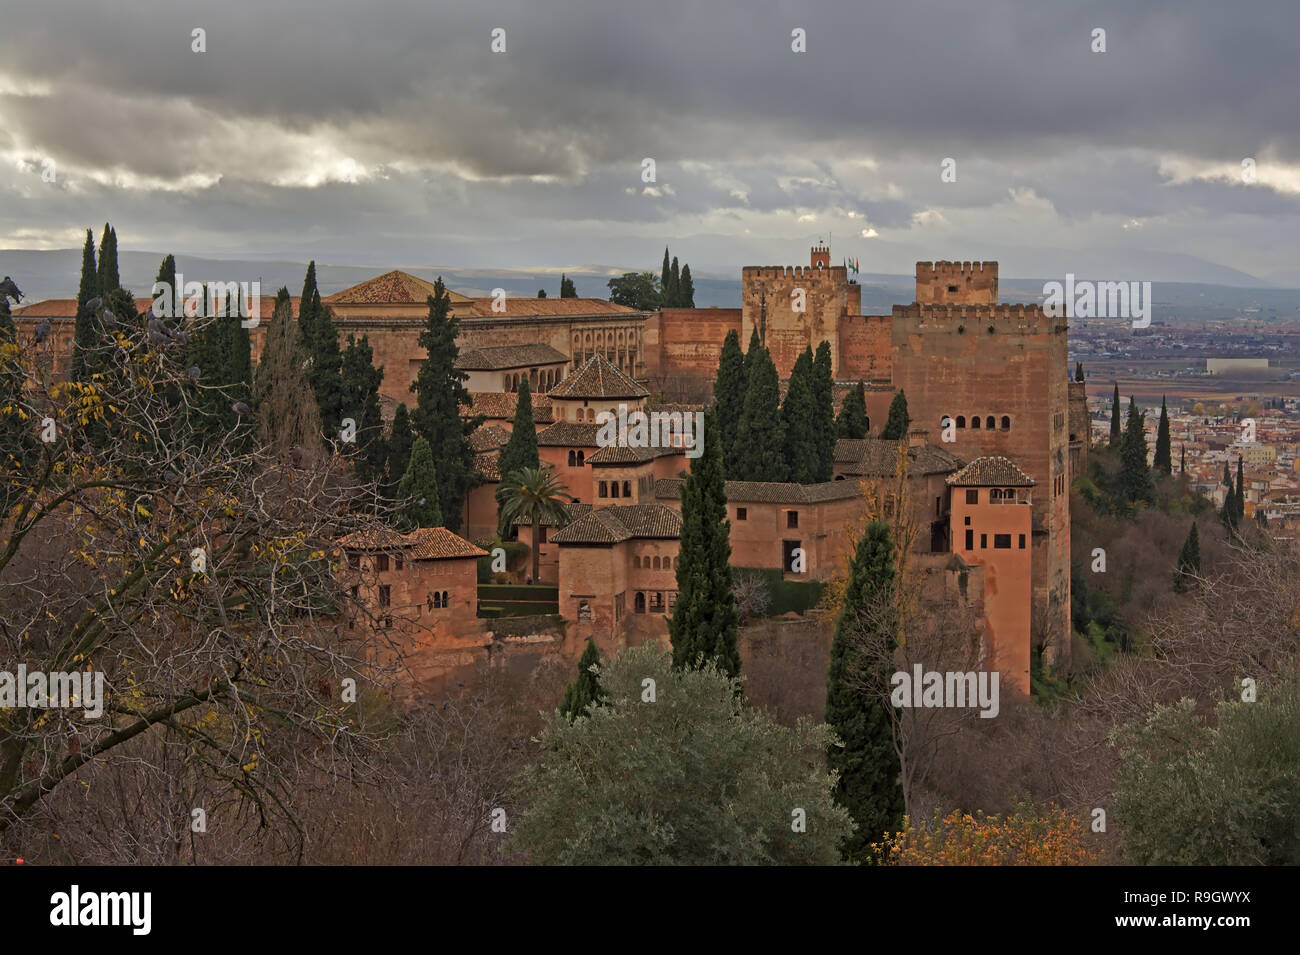 Alhambra mittelalterliche maurische Burg auf einem Hügel, mit Zypressen und die Stadt Granada unten an einem bewölkten Tag Stockfoto